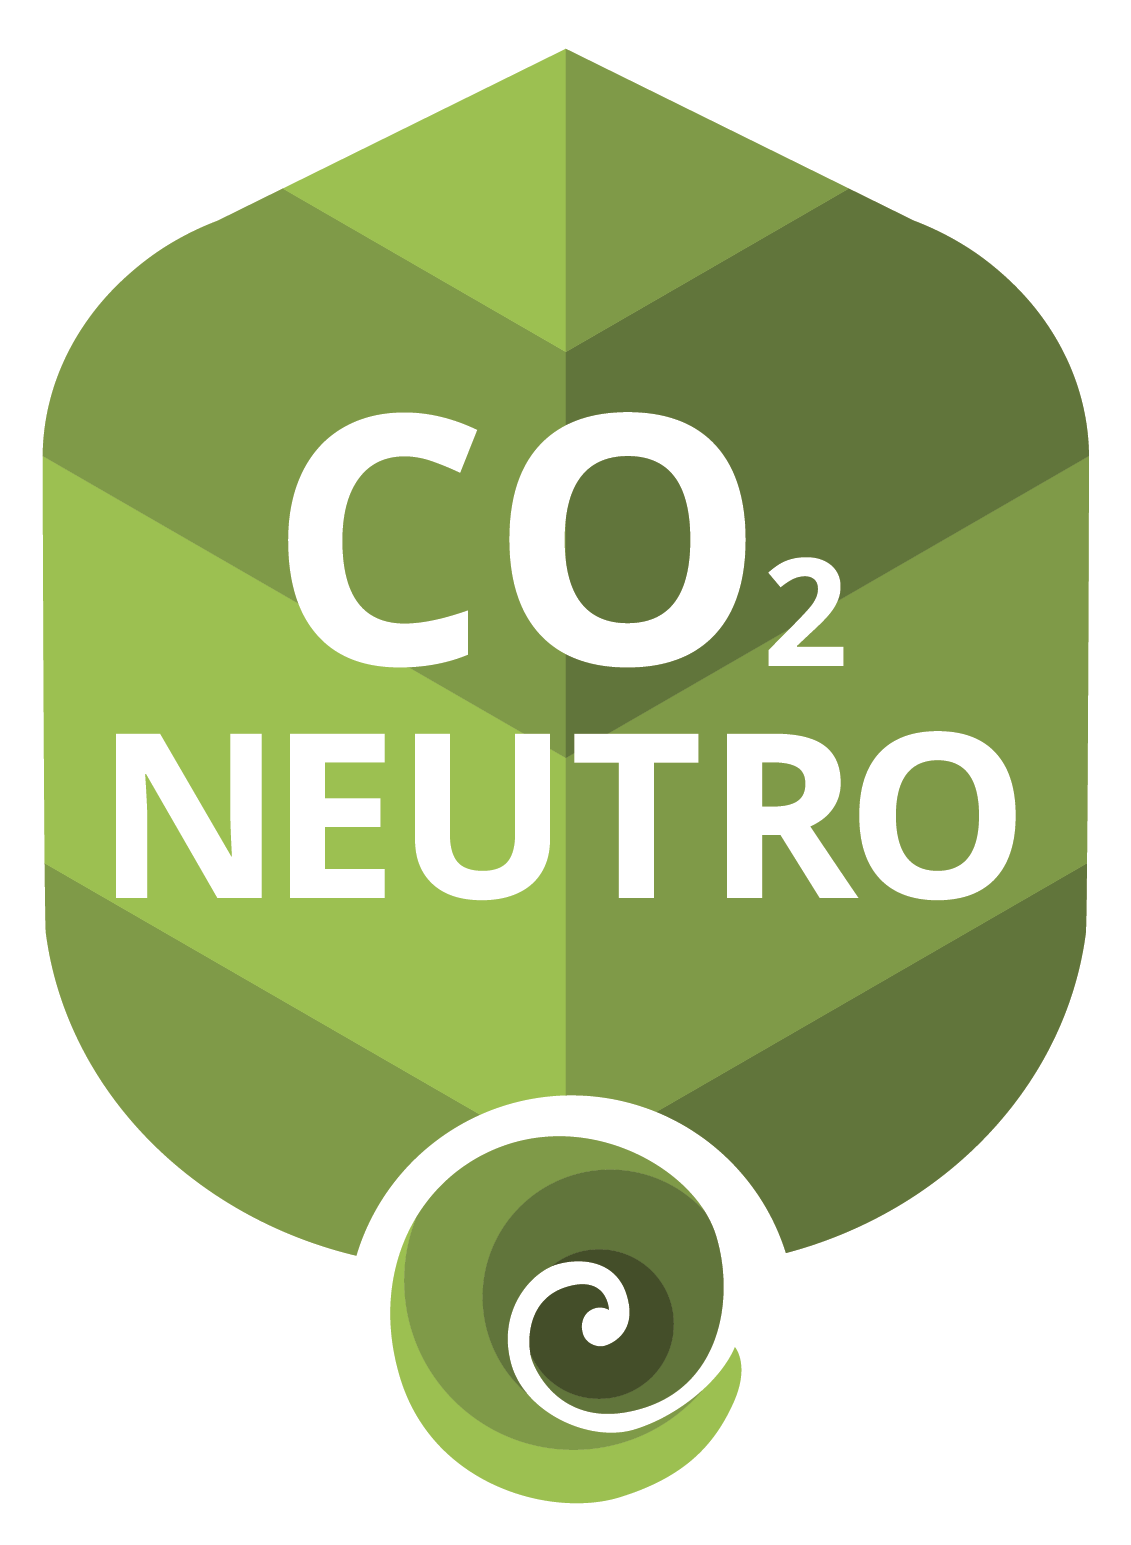 FRETE CO2 NEUTRO